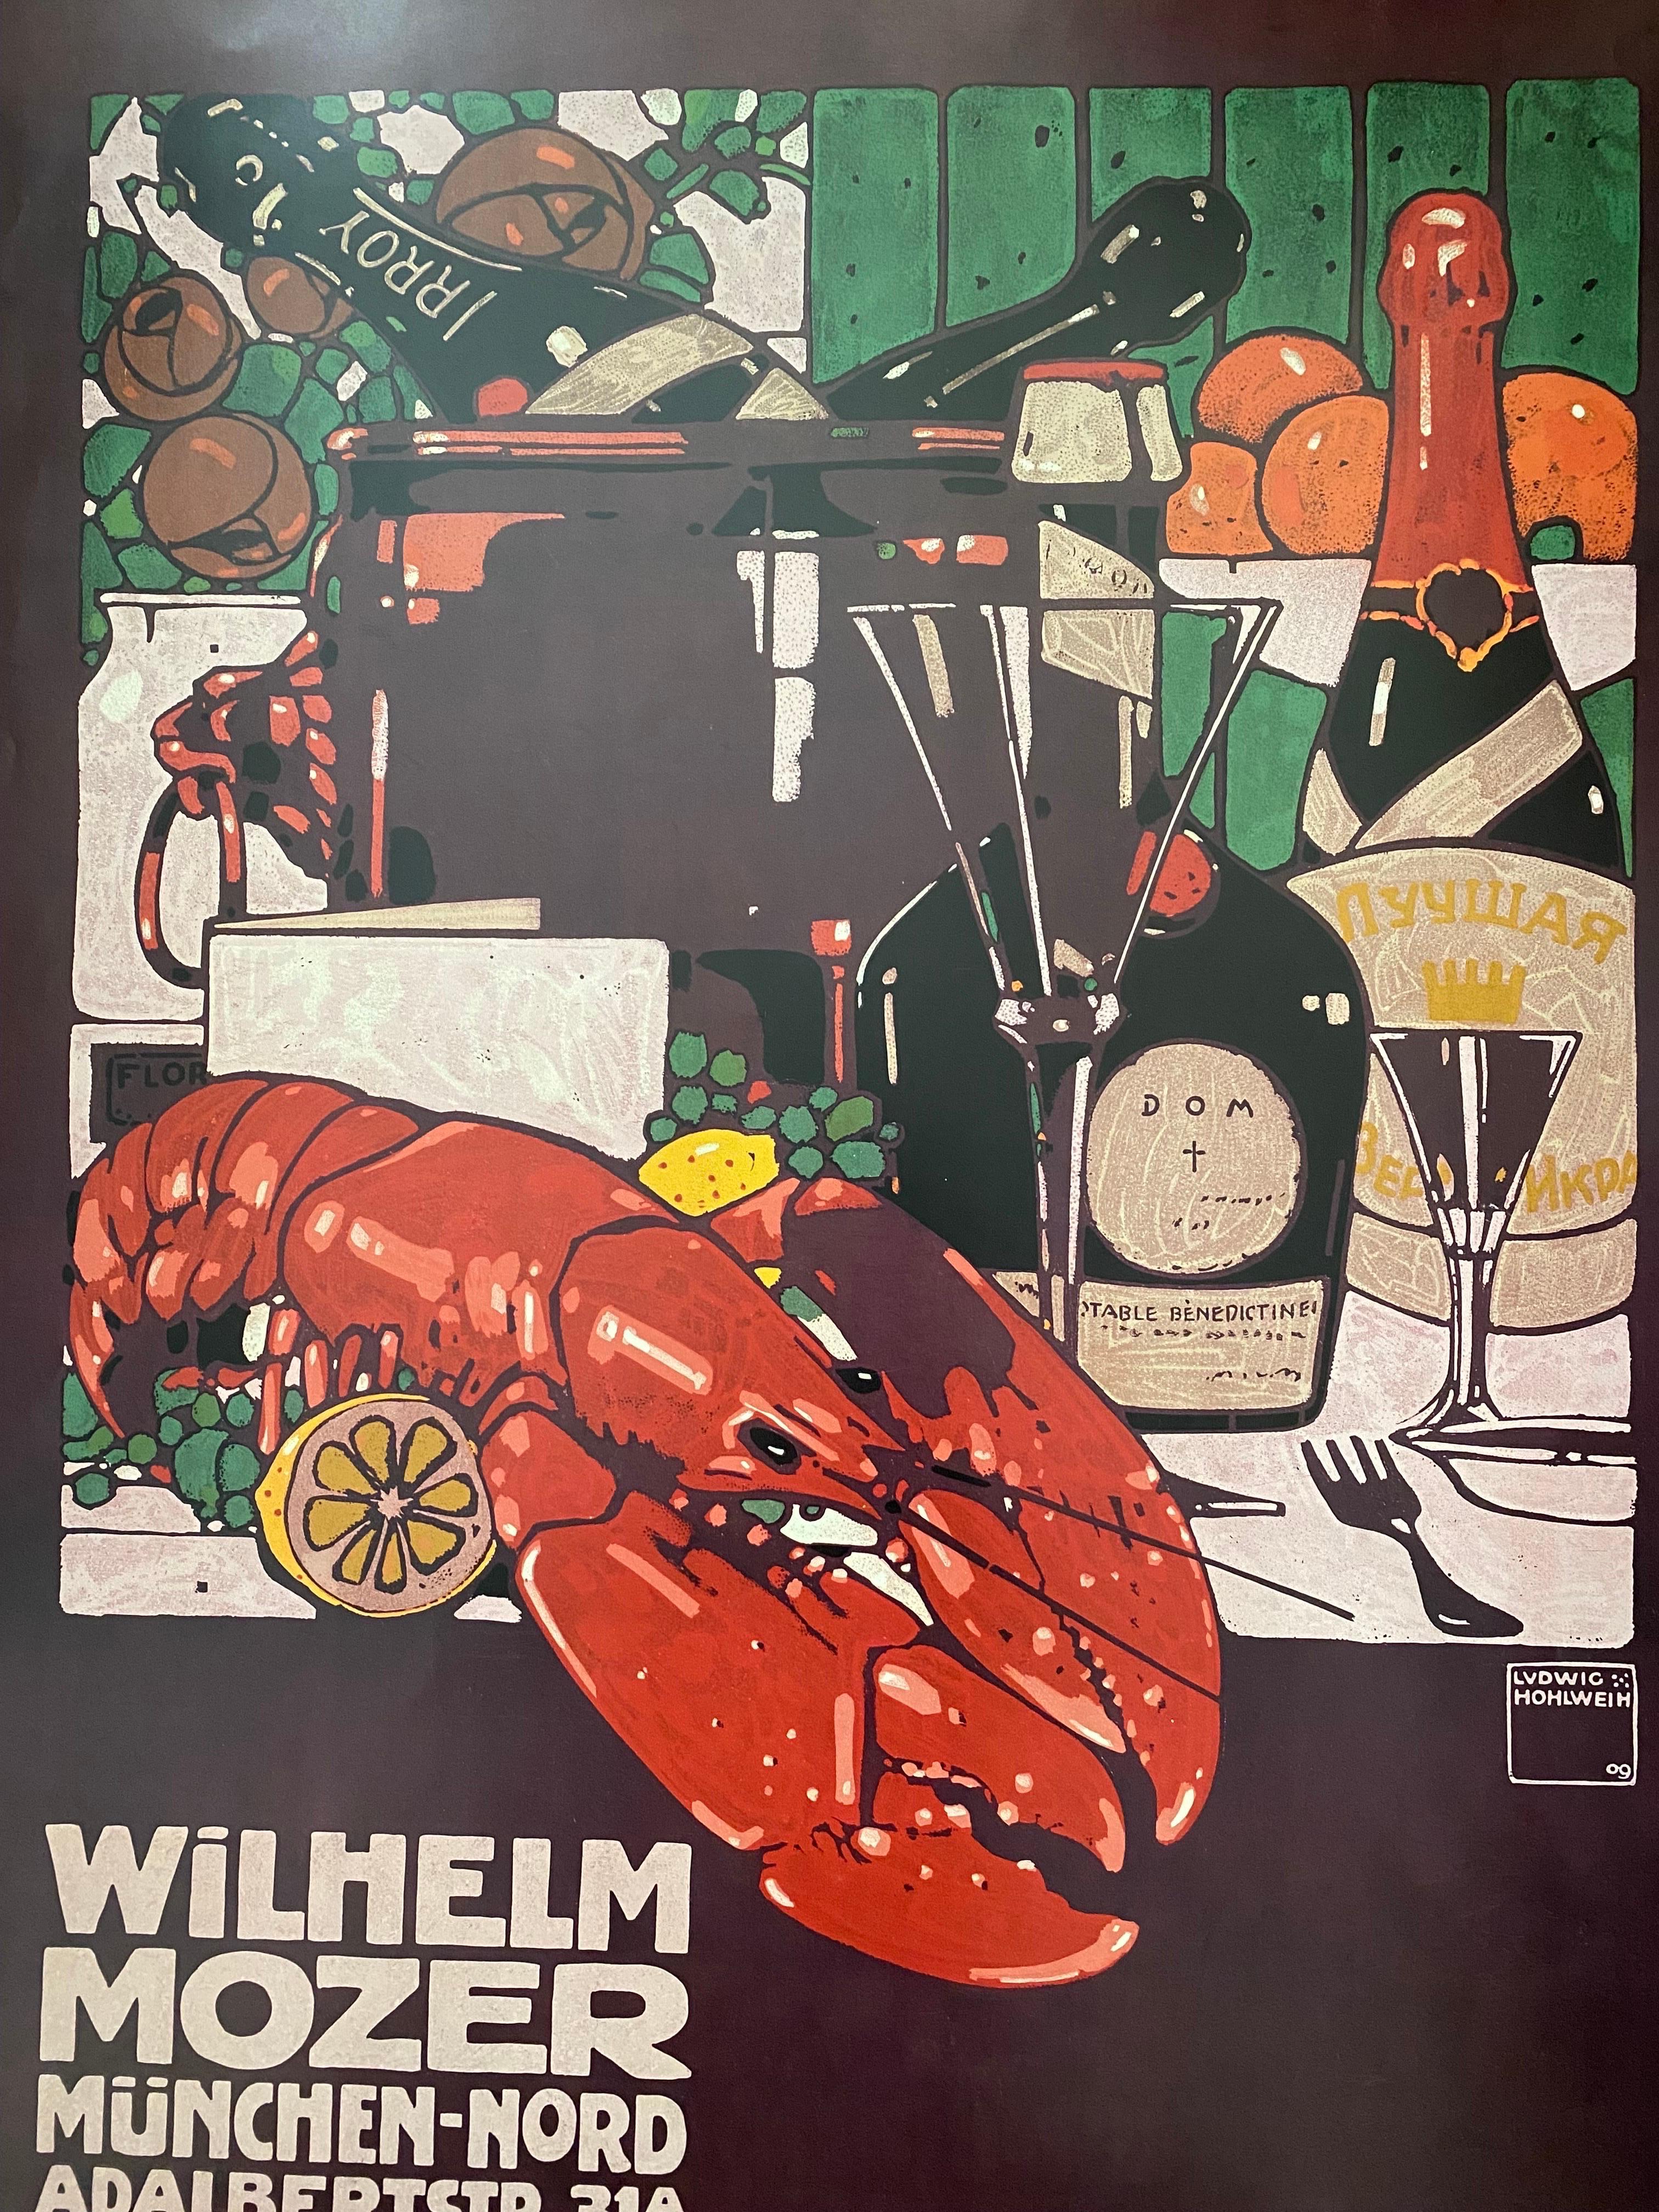 Magnifique impression conçue par l'artiste allemand Ludwig Hohlwein. Cette affiche publicitaire pour le magasin de charcuterie de Wilhelm Mozer à Munich a été publiée à l'origine en 1909. Il s'agit d'une reproduction réalisée en 1985 pour le Museum